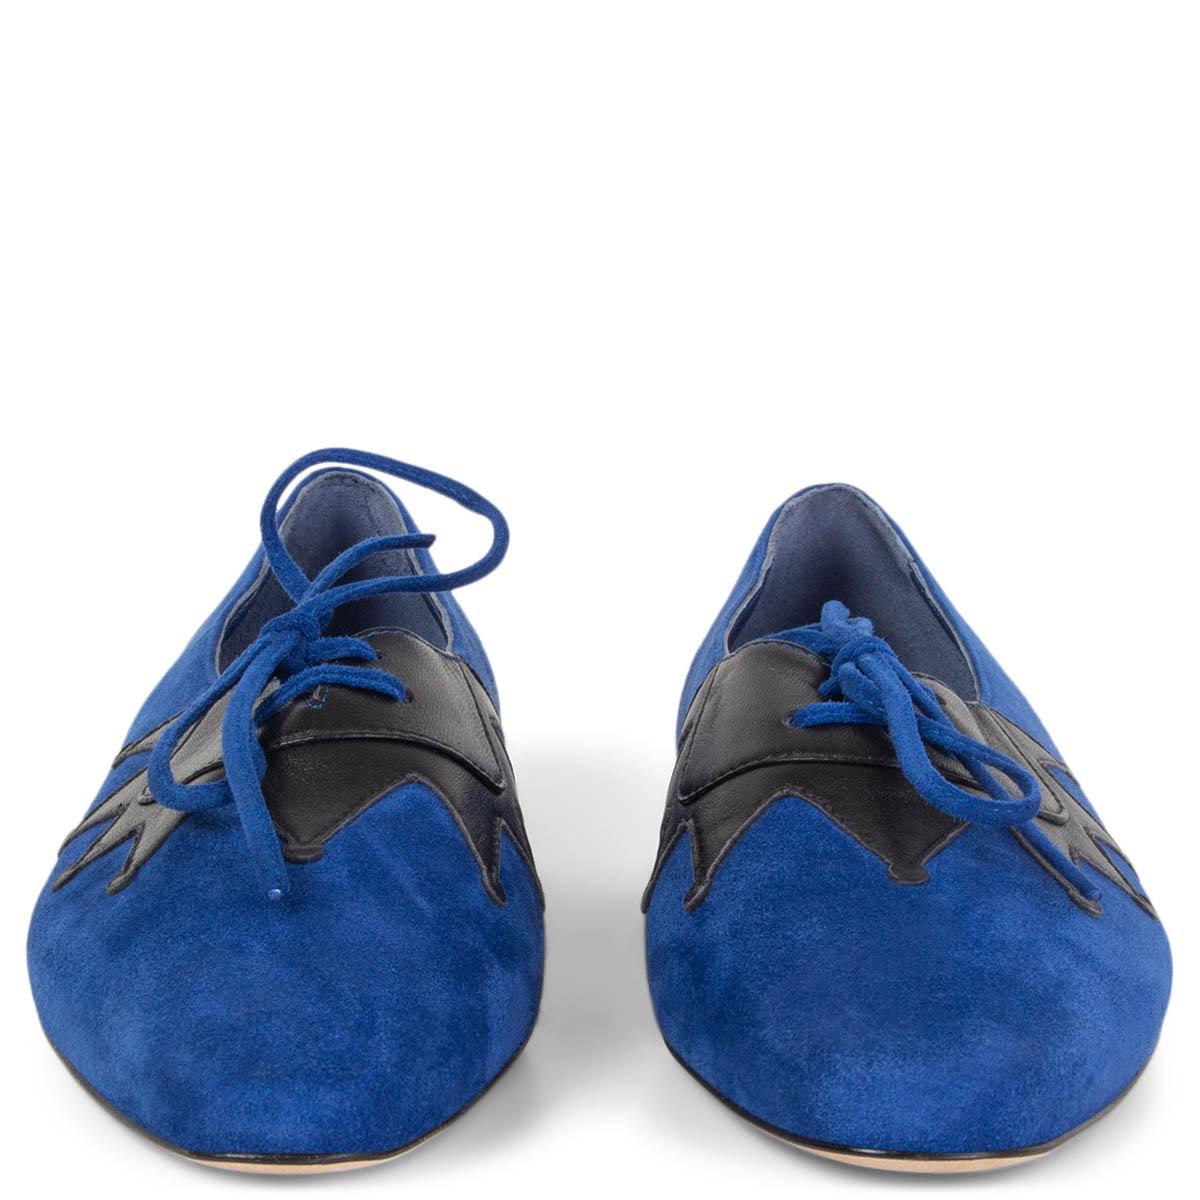 100% authentische Manolo Blahnik Harlekin spitze Zehe Oxford-Stil Schuhe in königsblauem Wildleder und schwarzem Kalbsleder. Brandneu. 

Messungen
Aufgedruckte Größe	36.5
Schuhgröße	36.5
Innensohle	24cm (9.4in)
Breite	7cm (2.7in)
Ferse	1cm